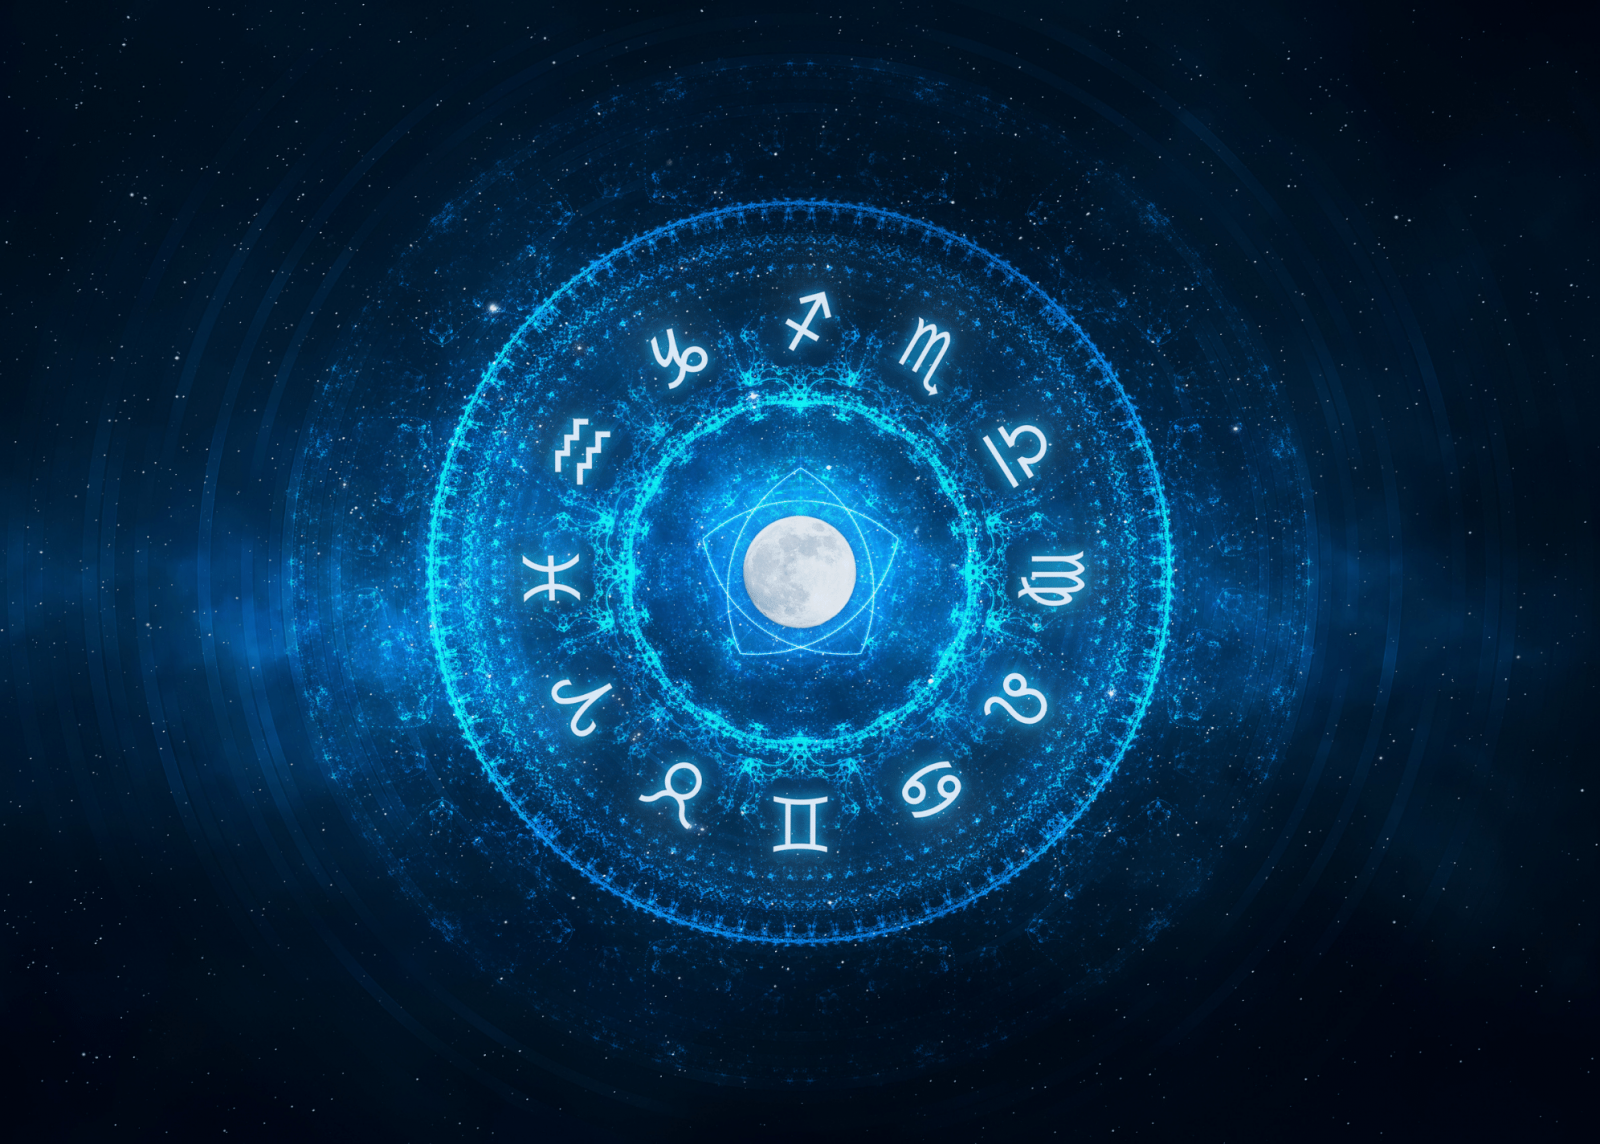 Símbolos do horóscopo em azul.